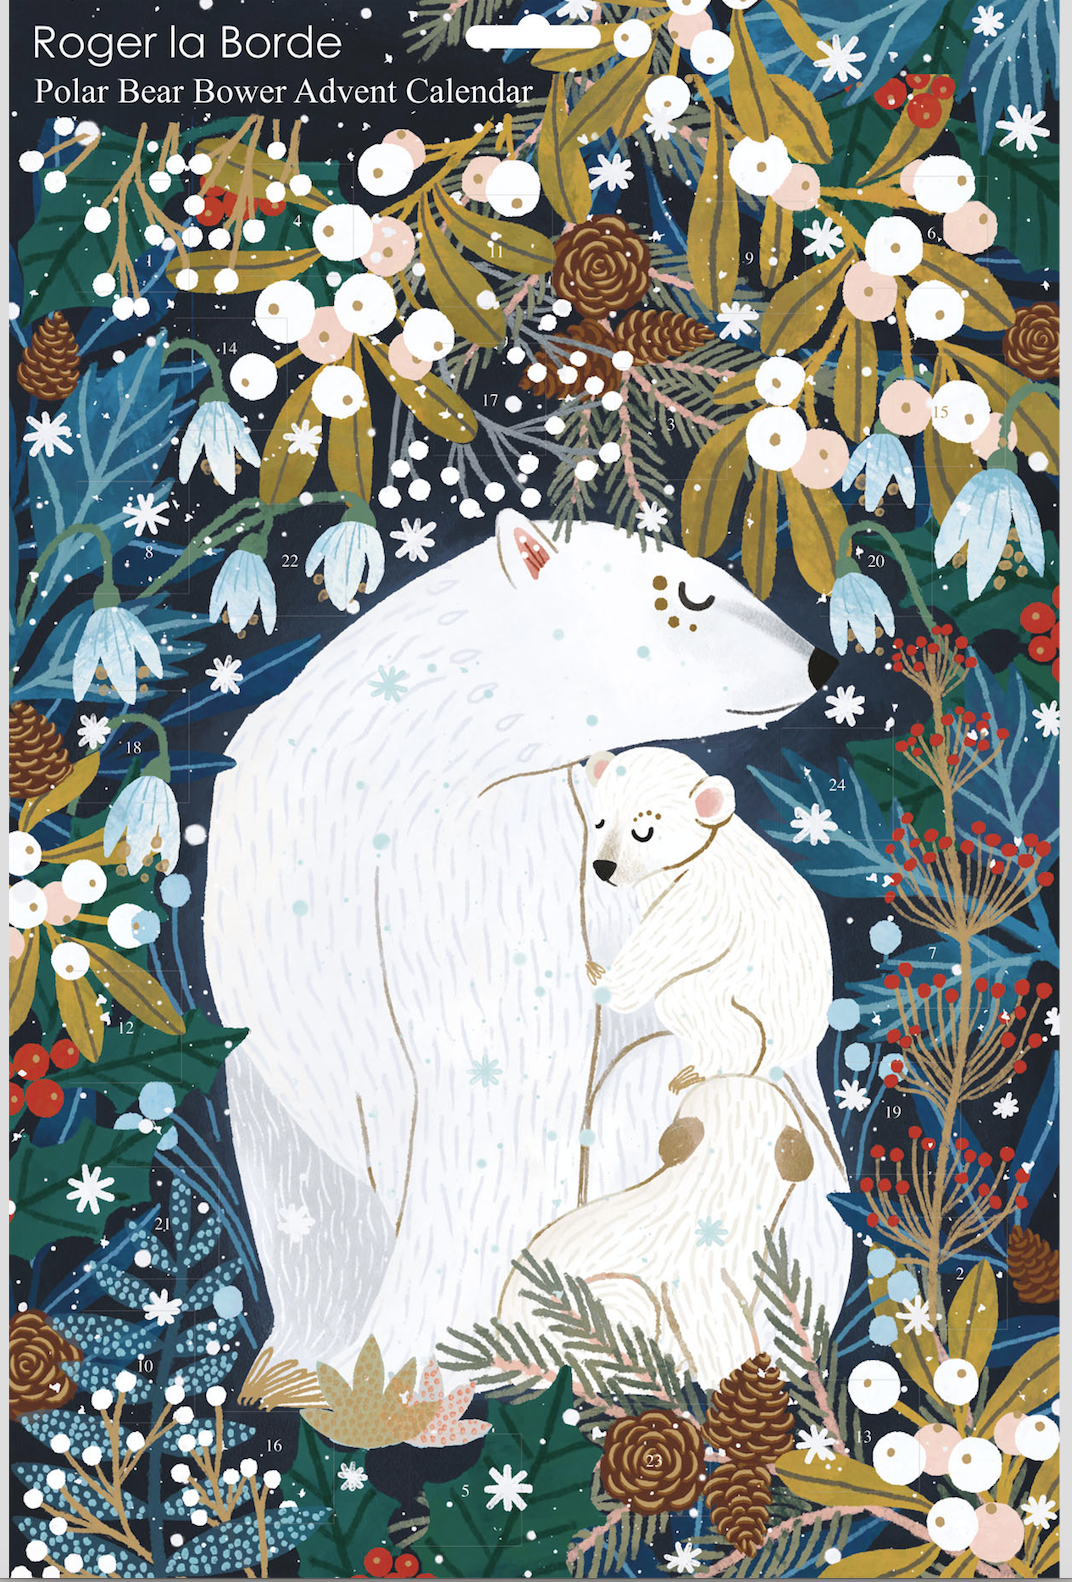 Polar Bear Bower Advent Calendar